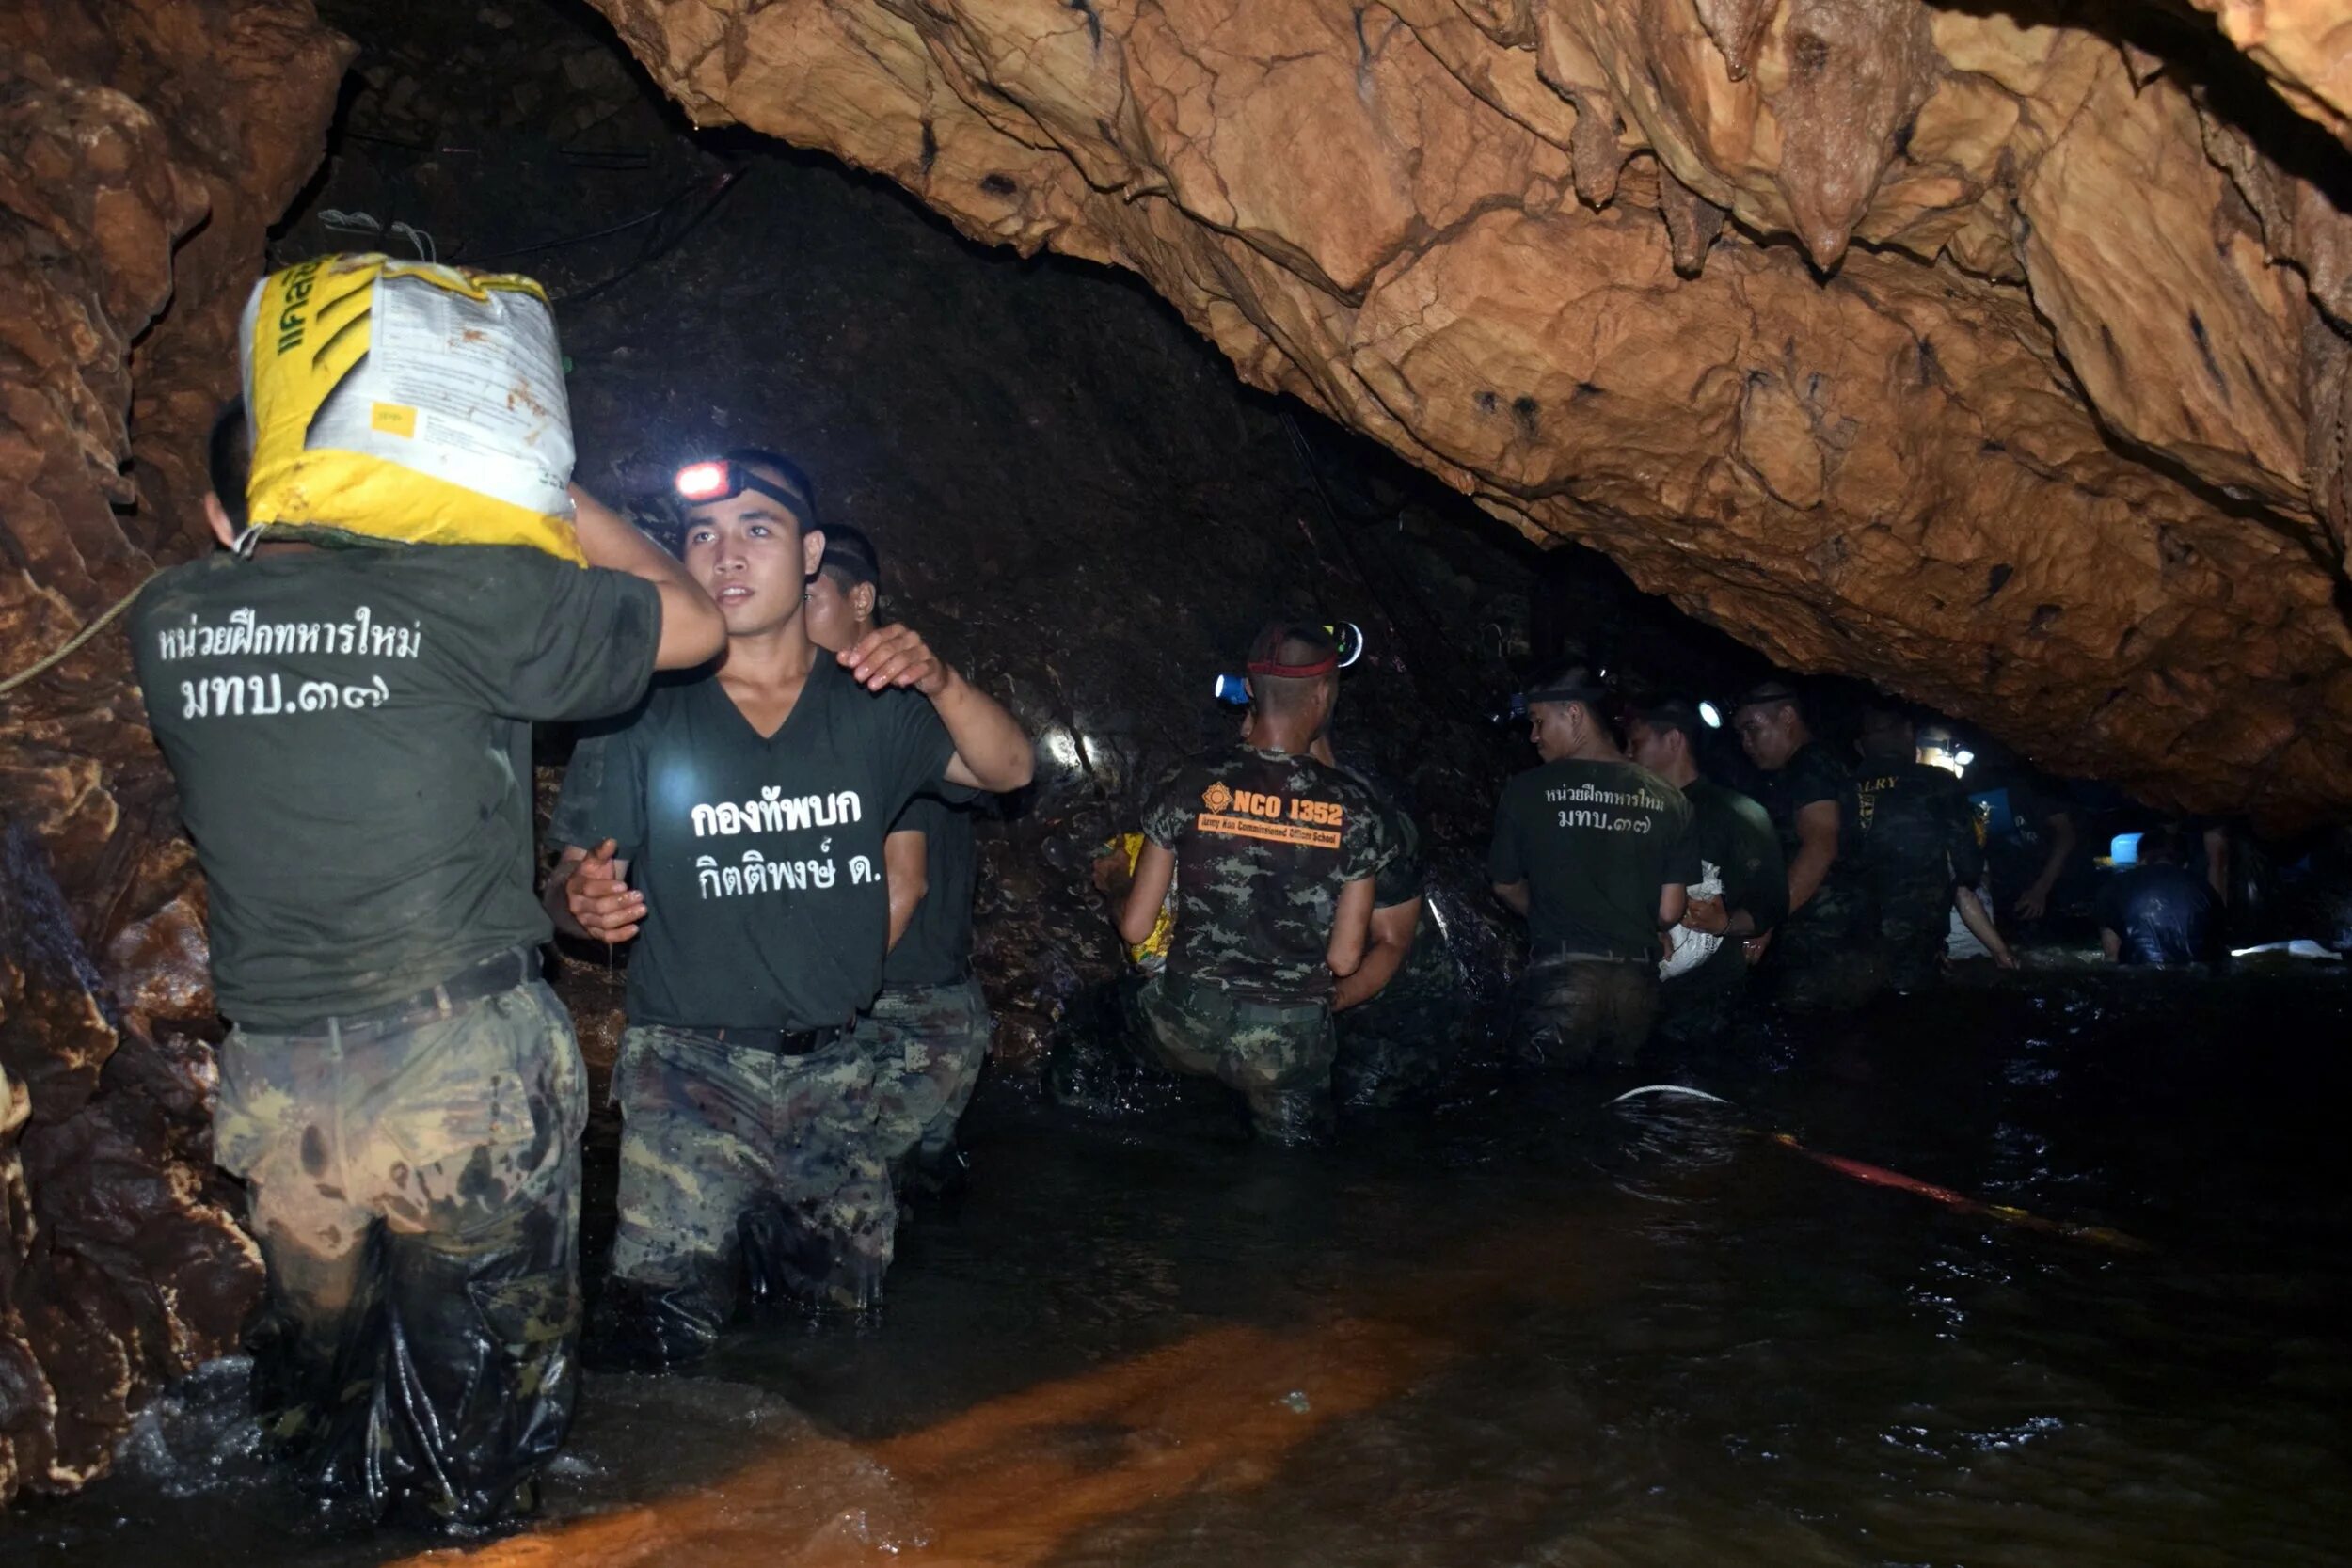 Пещера в Тайланде. Спасение детей из пещеры в Таиланде. Спасение детей в пещере в Тайланде. Спасение детей из пещеры в Таиланде 2018.